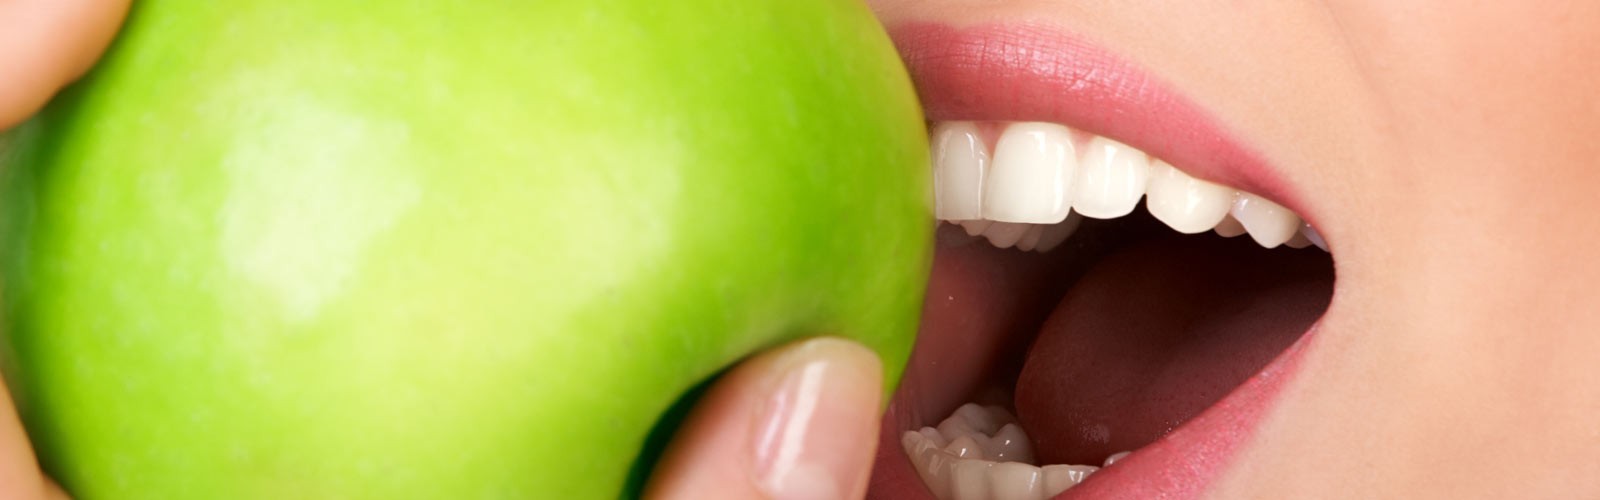 PhilosophieDer Erhalt Ihrer Zahngesundheit ist für uns das wichtigste Anliegen und hat für uns oberste Priorität. 